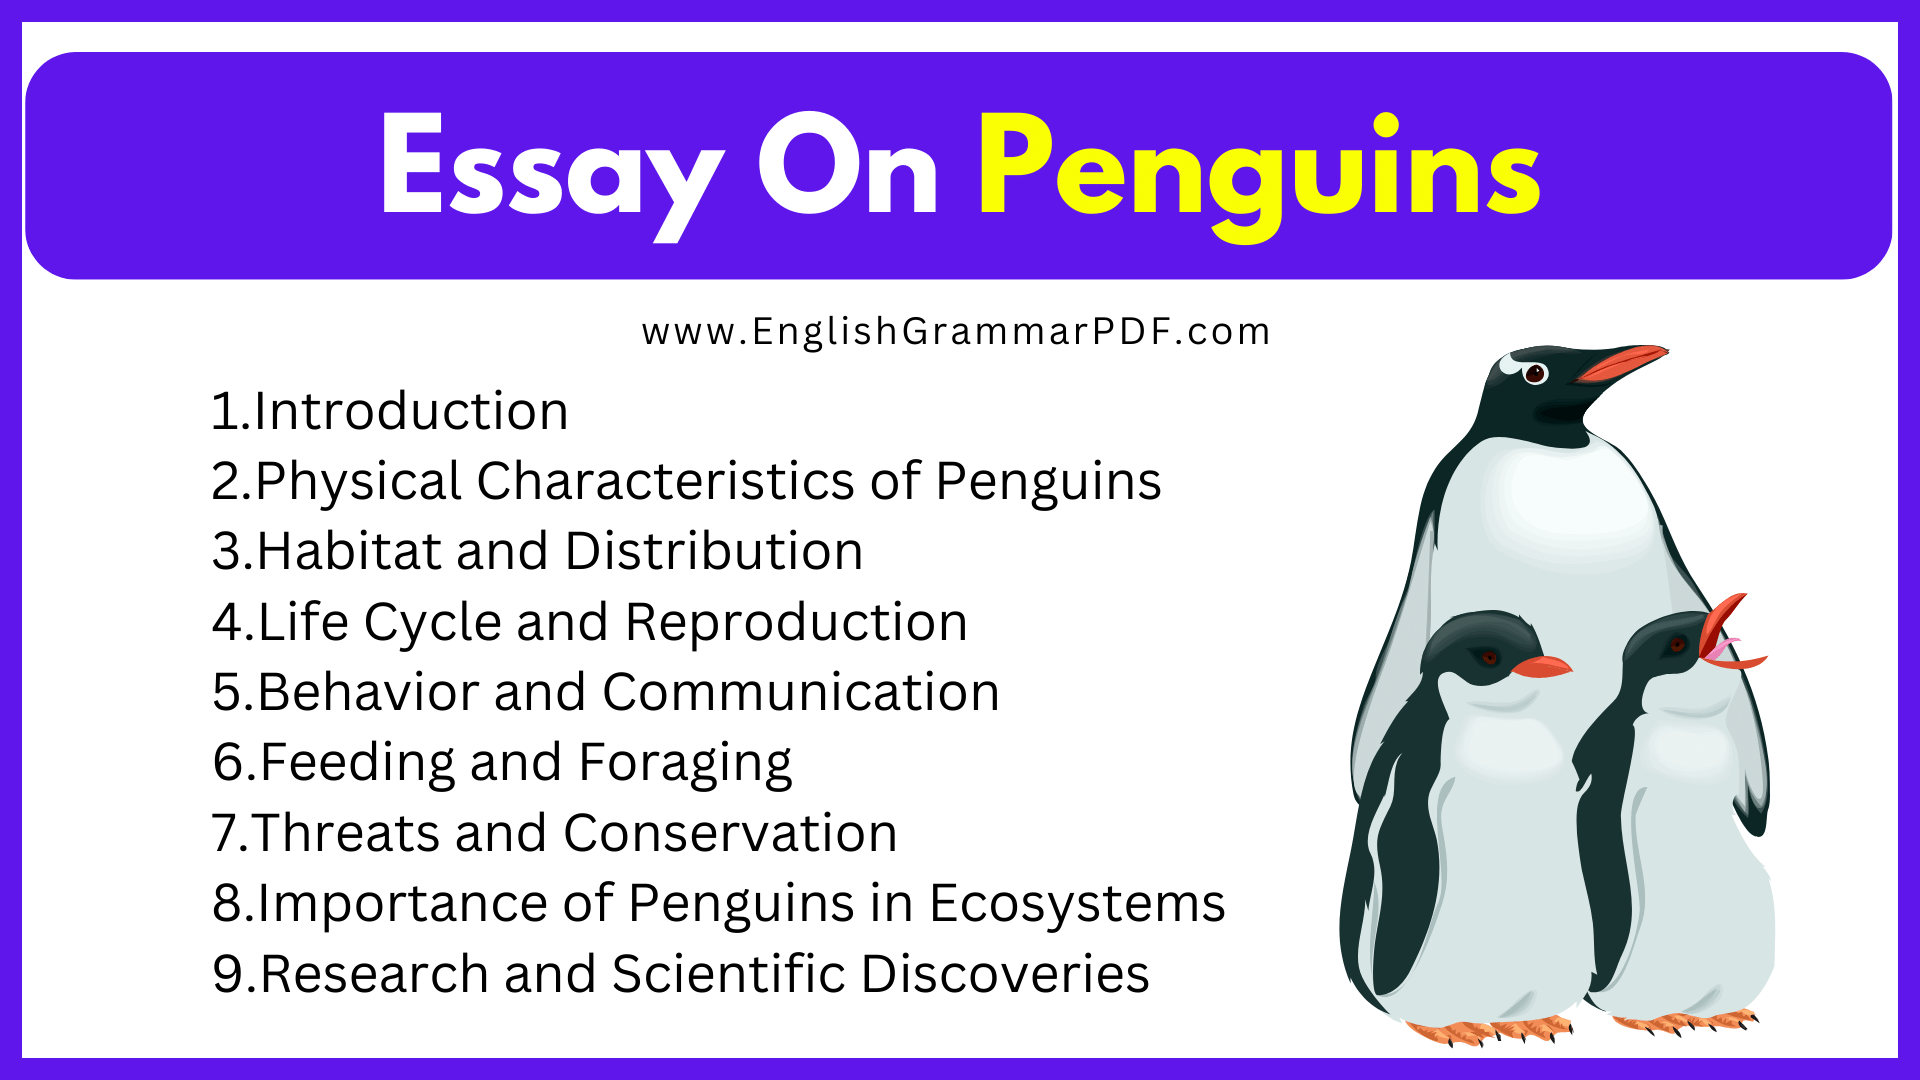 Essay On Penguins